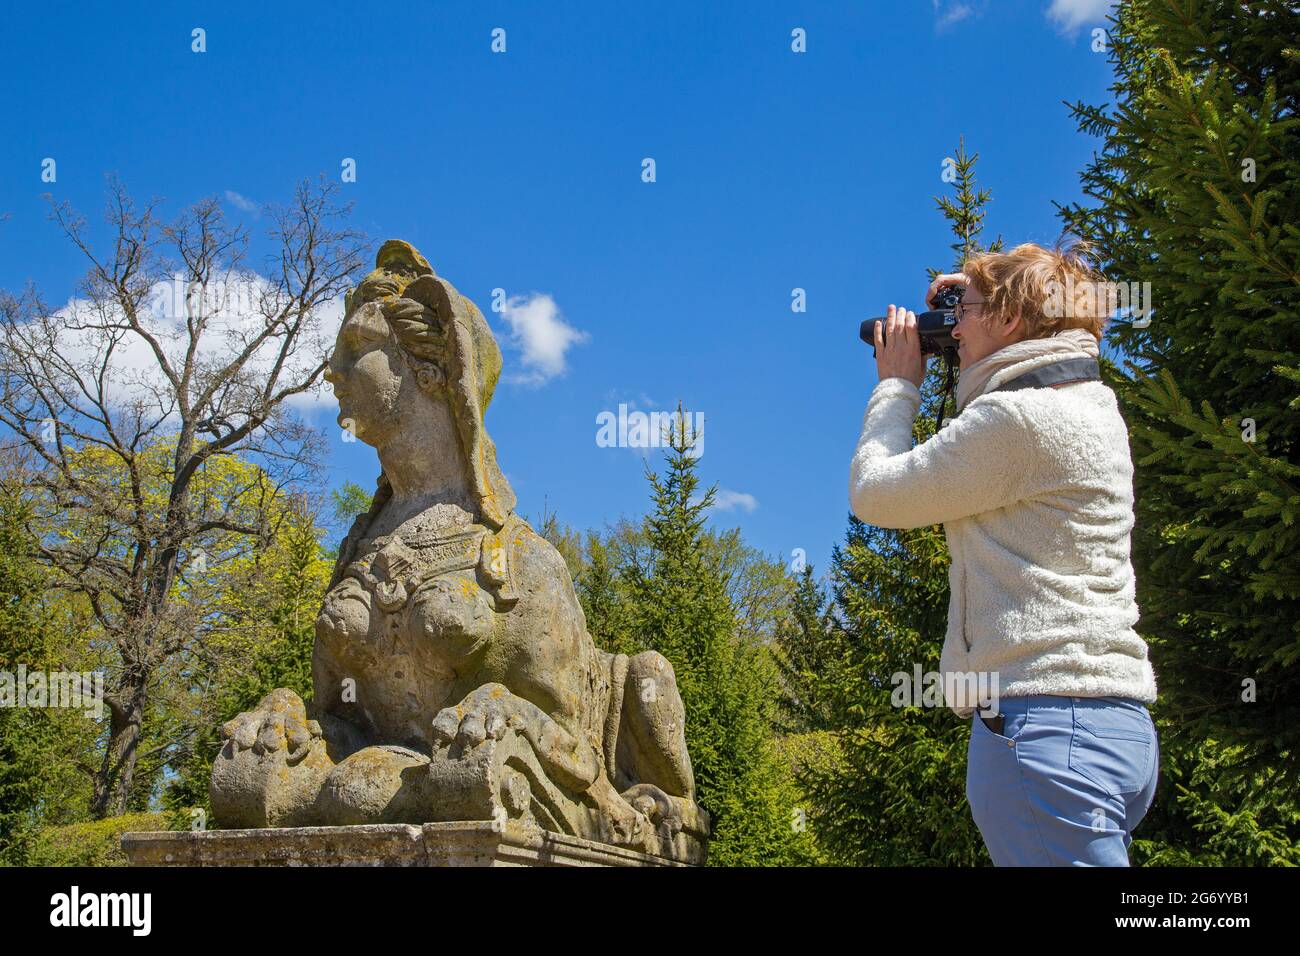 Frau, die die Sphinx-Statue fotografiert, Schloss Rheinsberg, Brandenburg, Deutschland Stockfoto